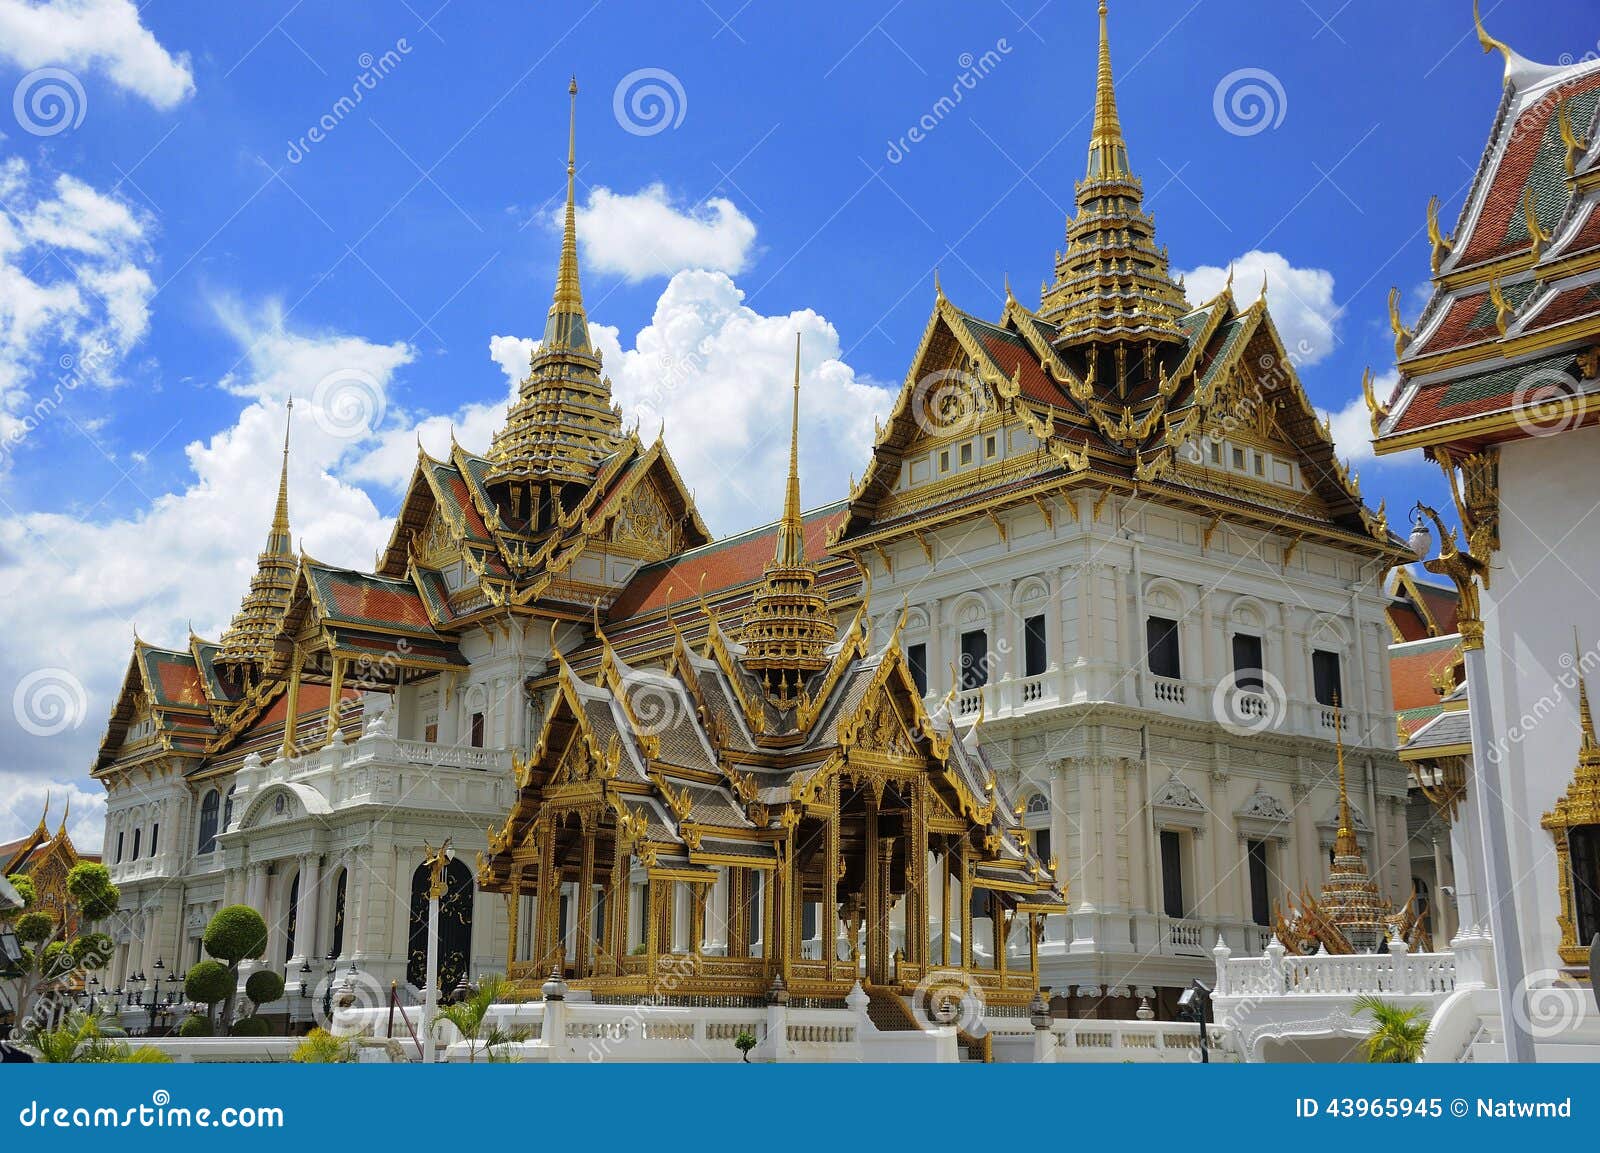 grand palace, bangkok, thailand